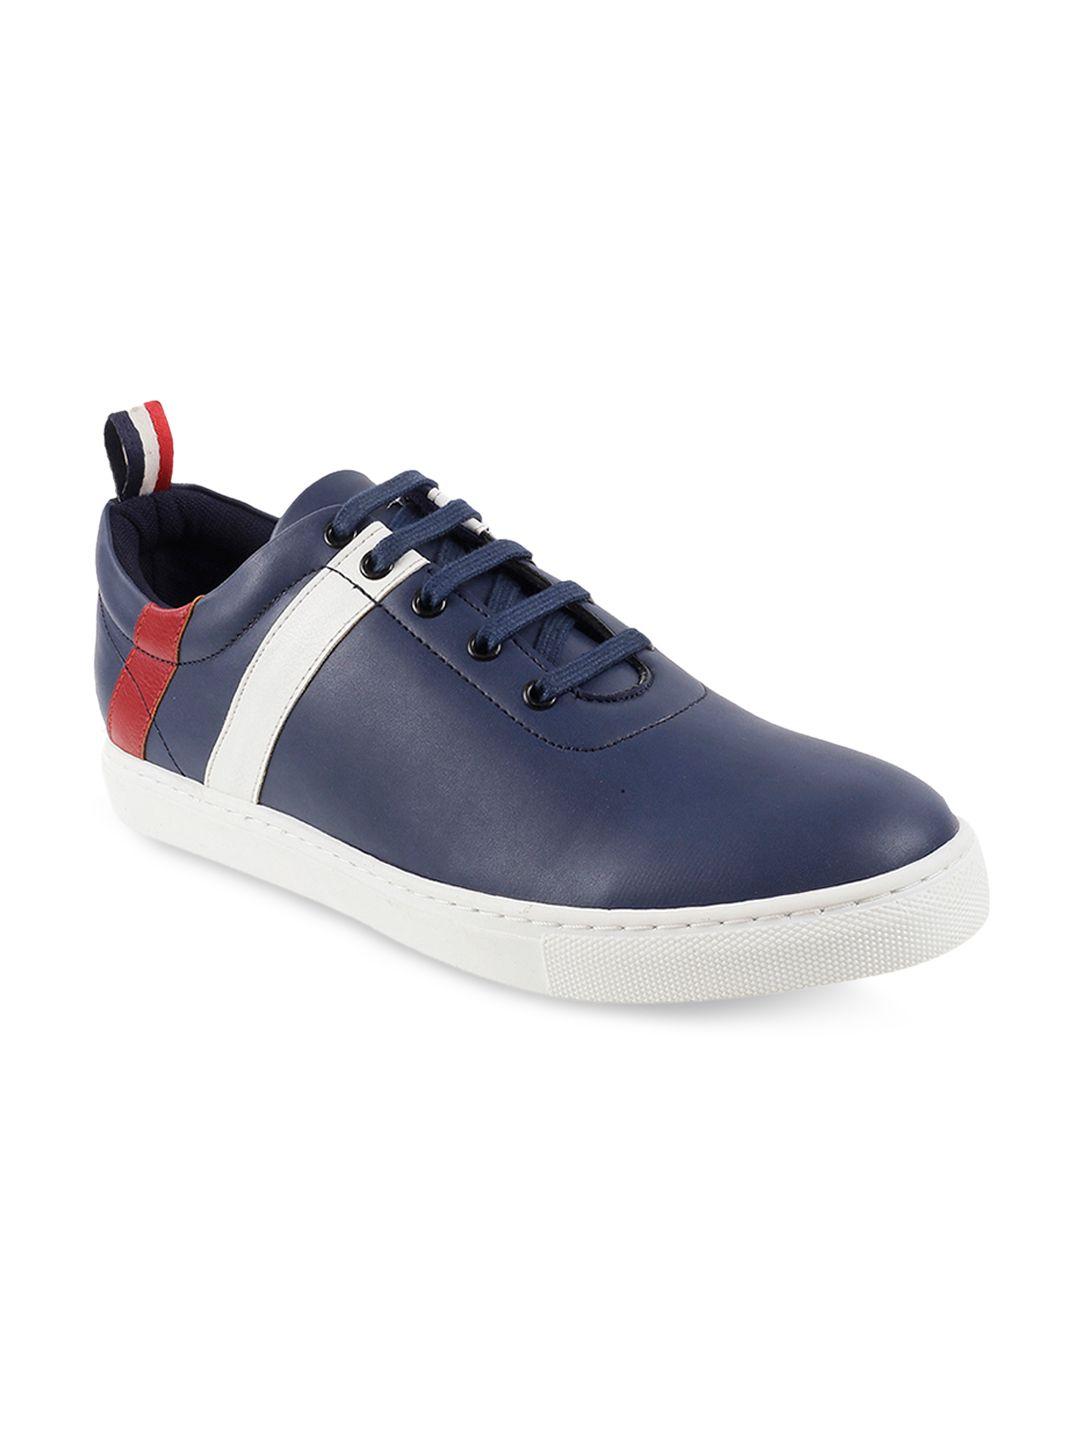 mochi-men-navy-blue-&-white-striped-sneakers